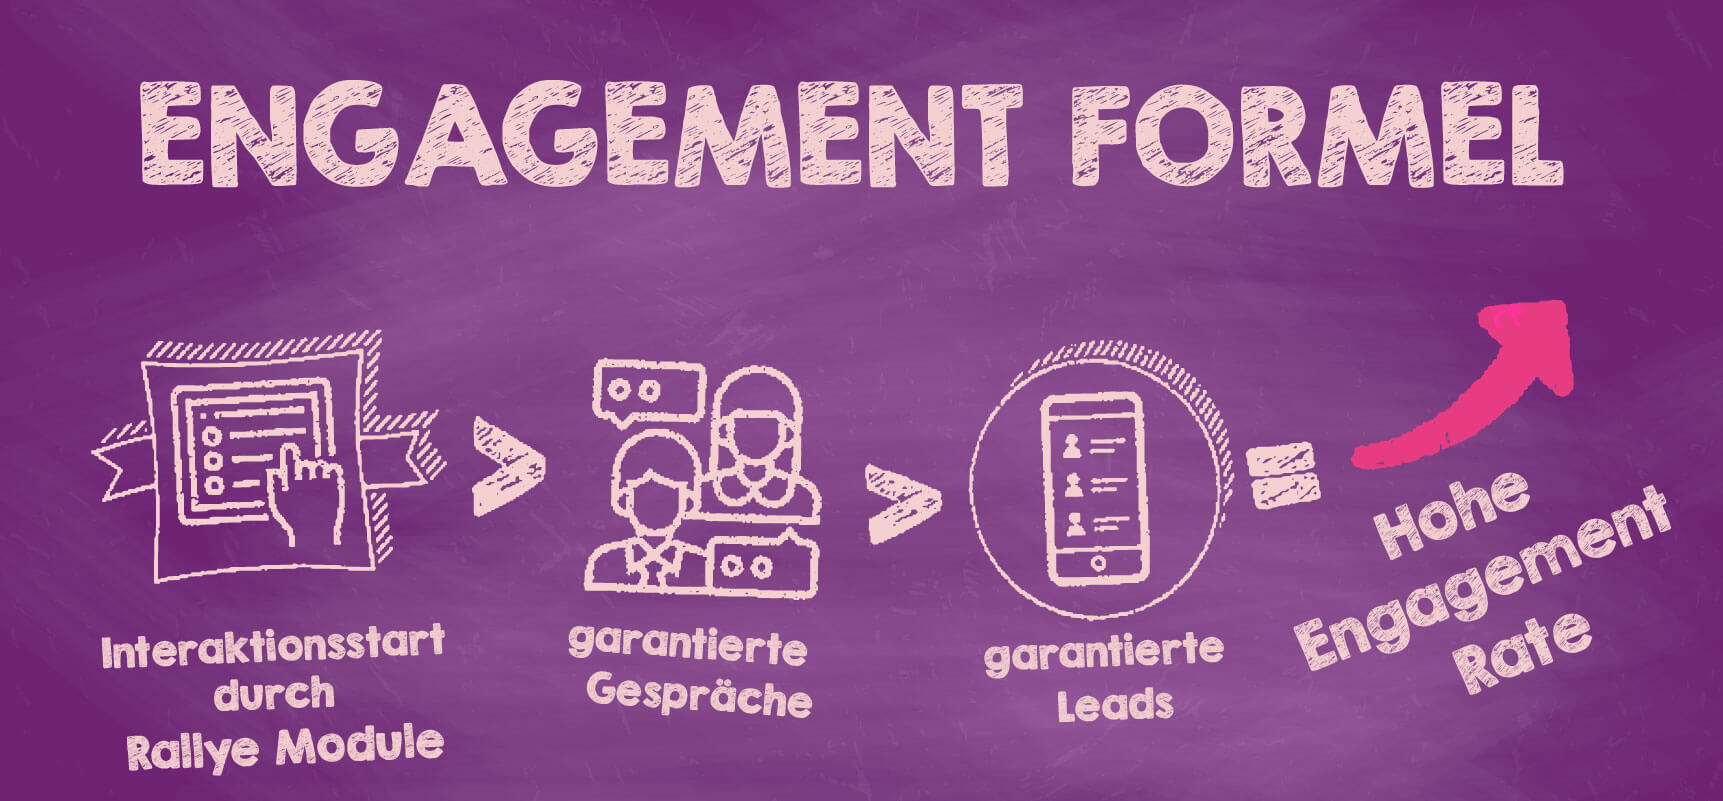 Darstellung des optimalen Engagement Marketings mittels einer Formel, bestehend aus aufeinander folgenden Icons.